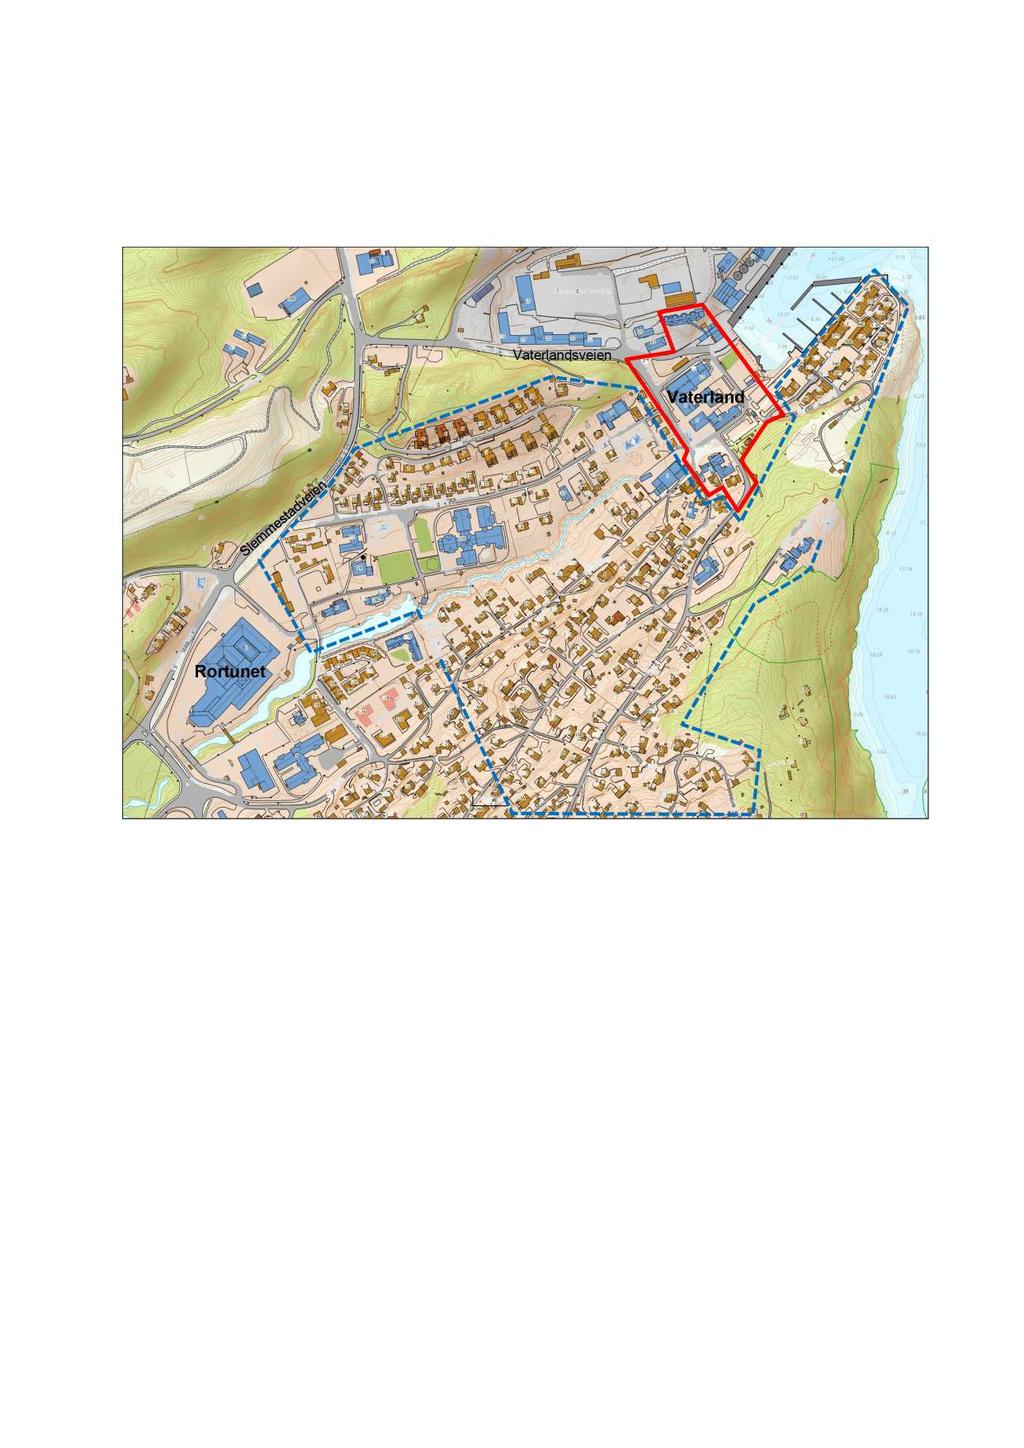 1 DAGEN S SI TU ASJON 1.1 Planområde for trafikkutredningen Vaterland p lanområde, som er beskrevet i trafikkutredningen, er vist innrammet med rød strek i figuren.